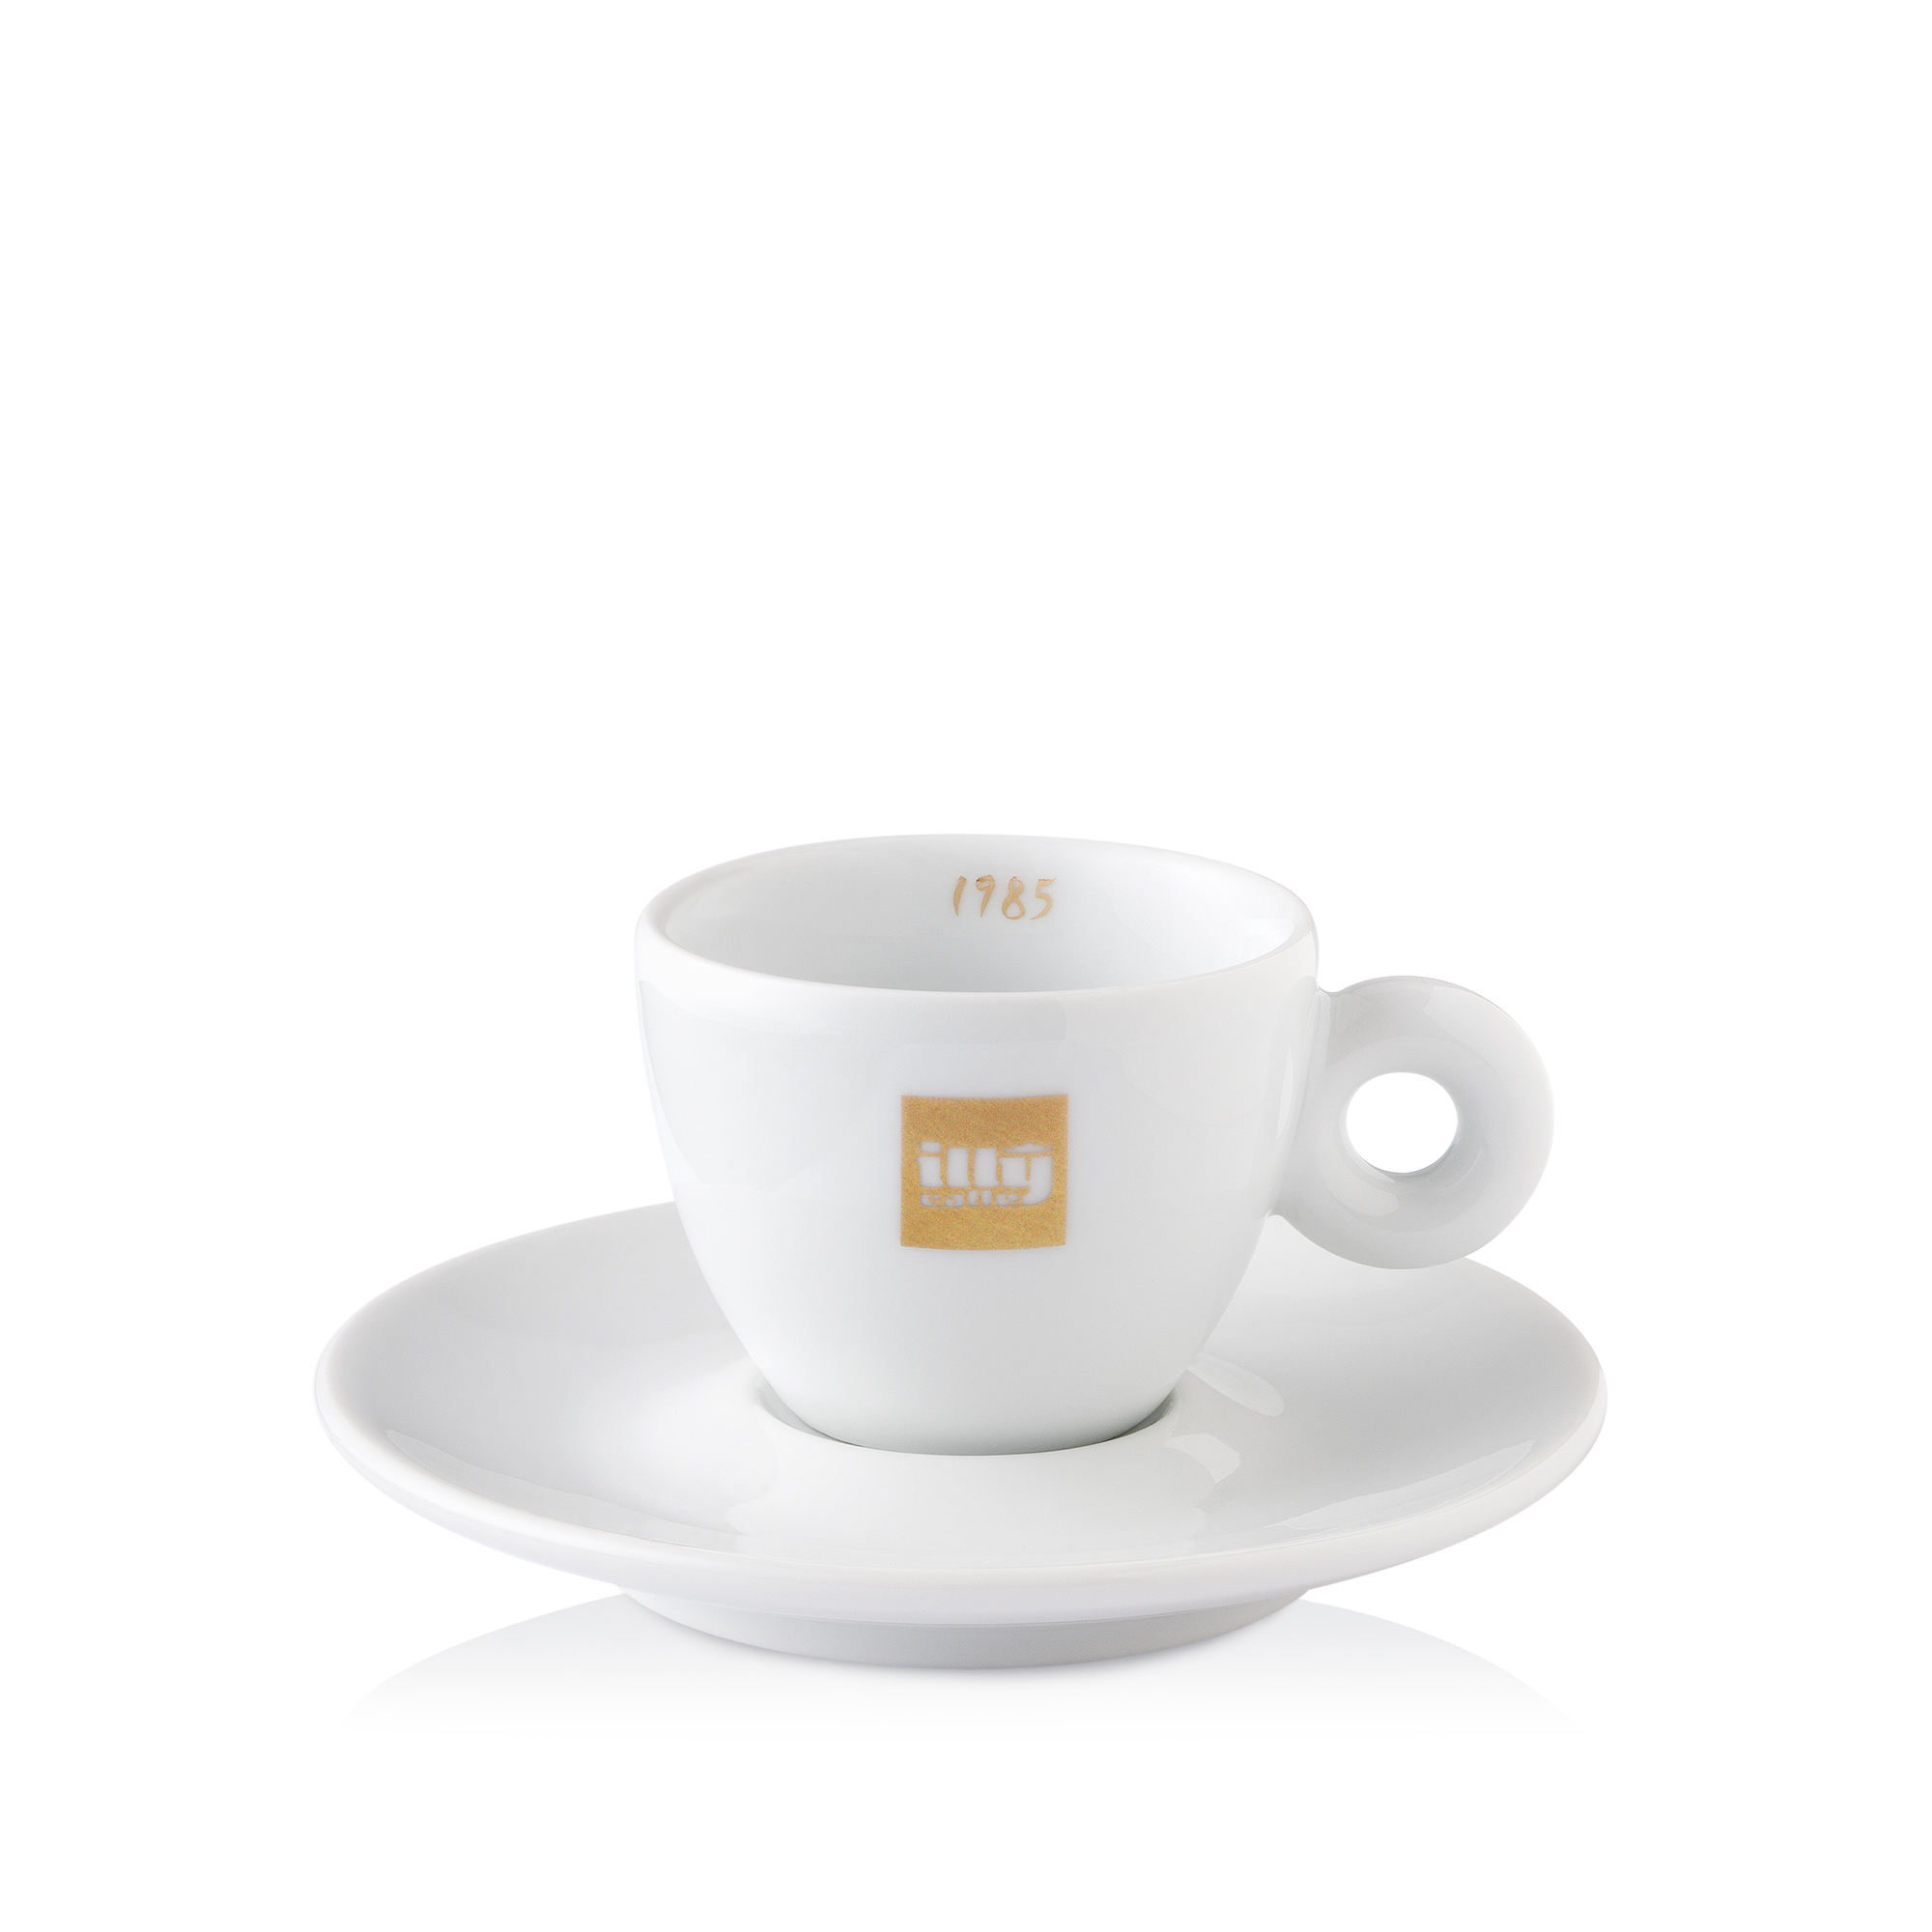 illy Heritage Collection - 6 tazzine da Caffè espresso